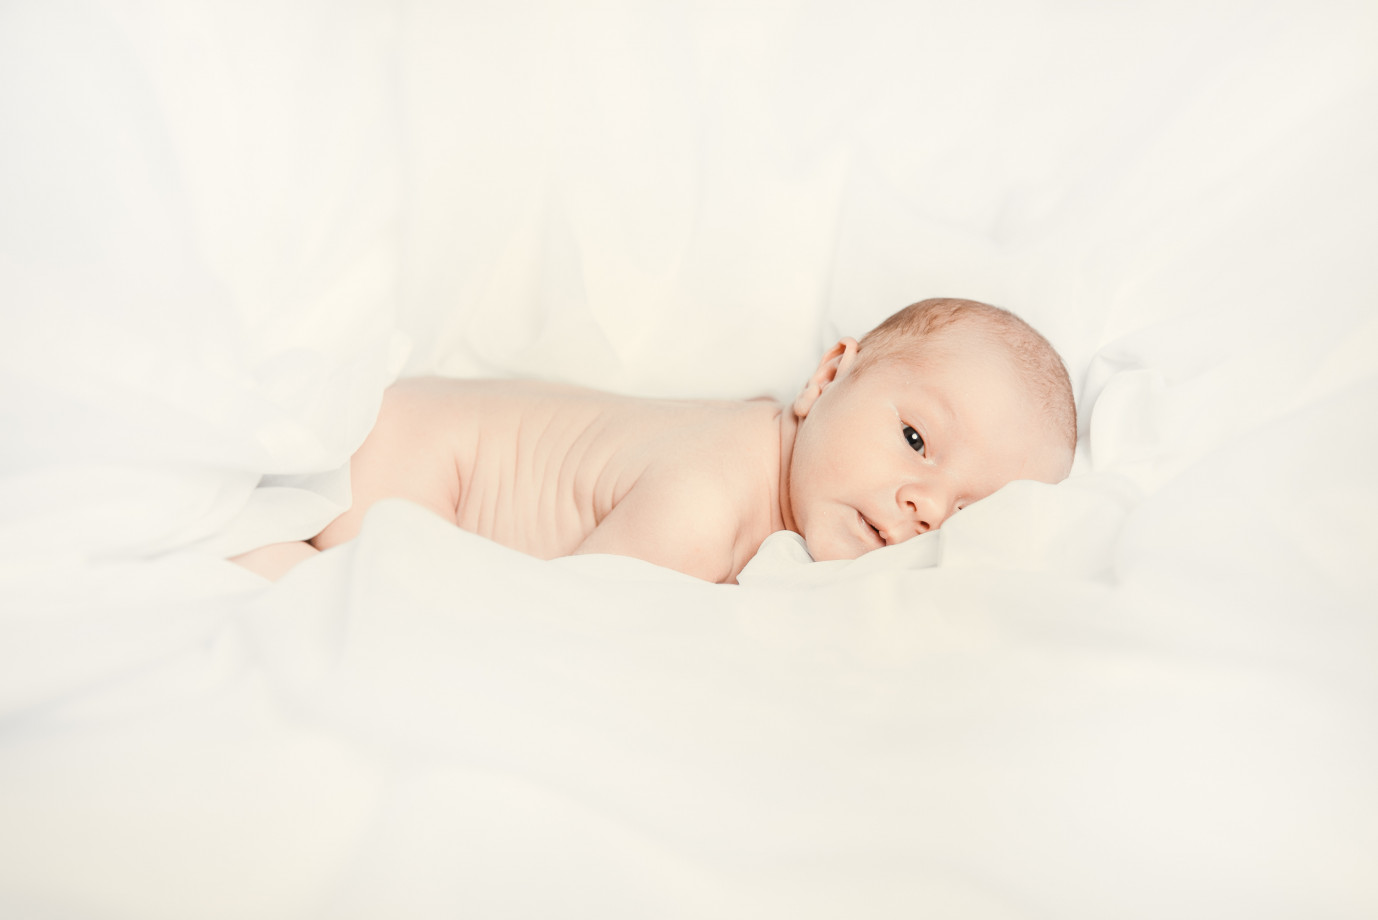 zdjęcia wroclaw fotograf ilkov-dmytro portfolio zdjecia noworodkow sesje noworodkowe niemowlę